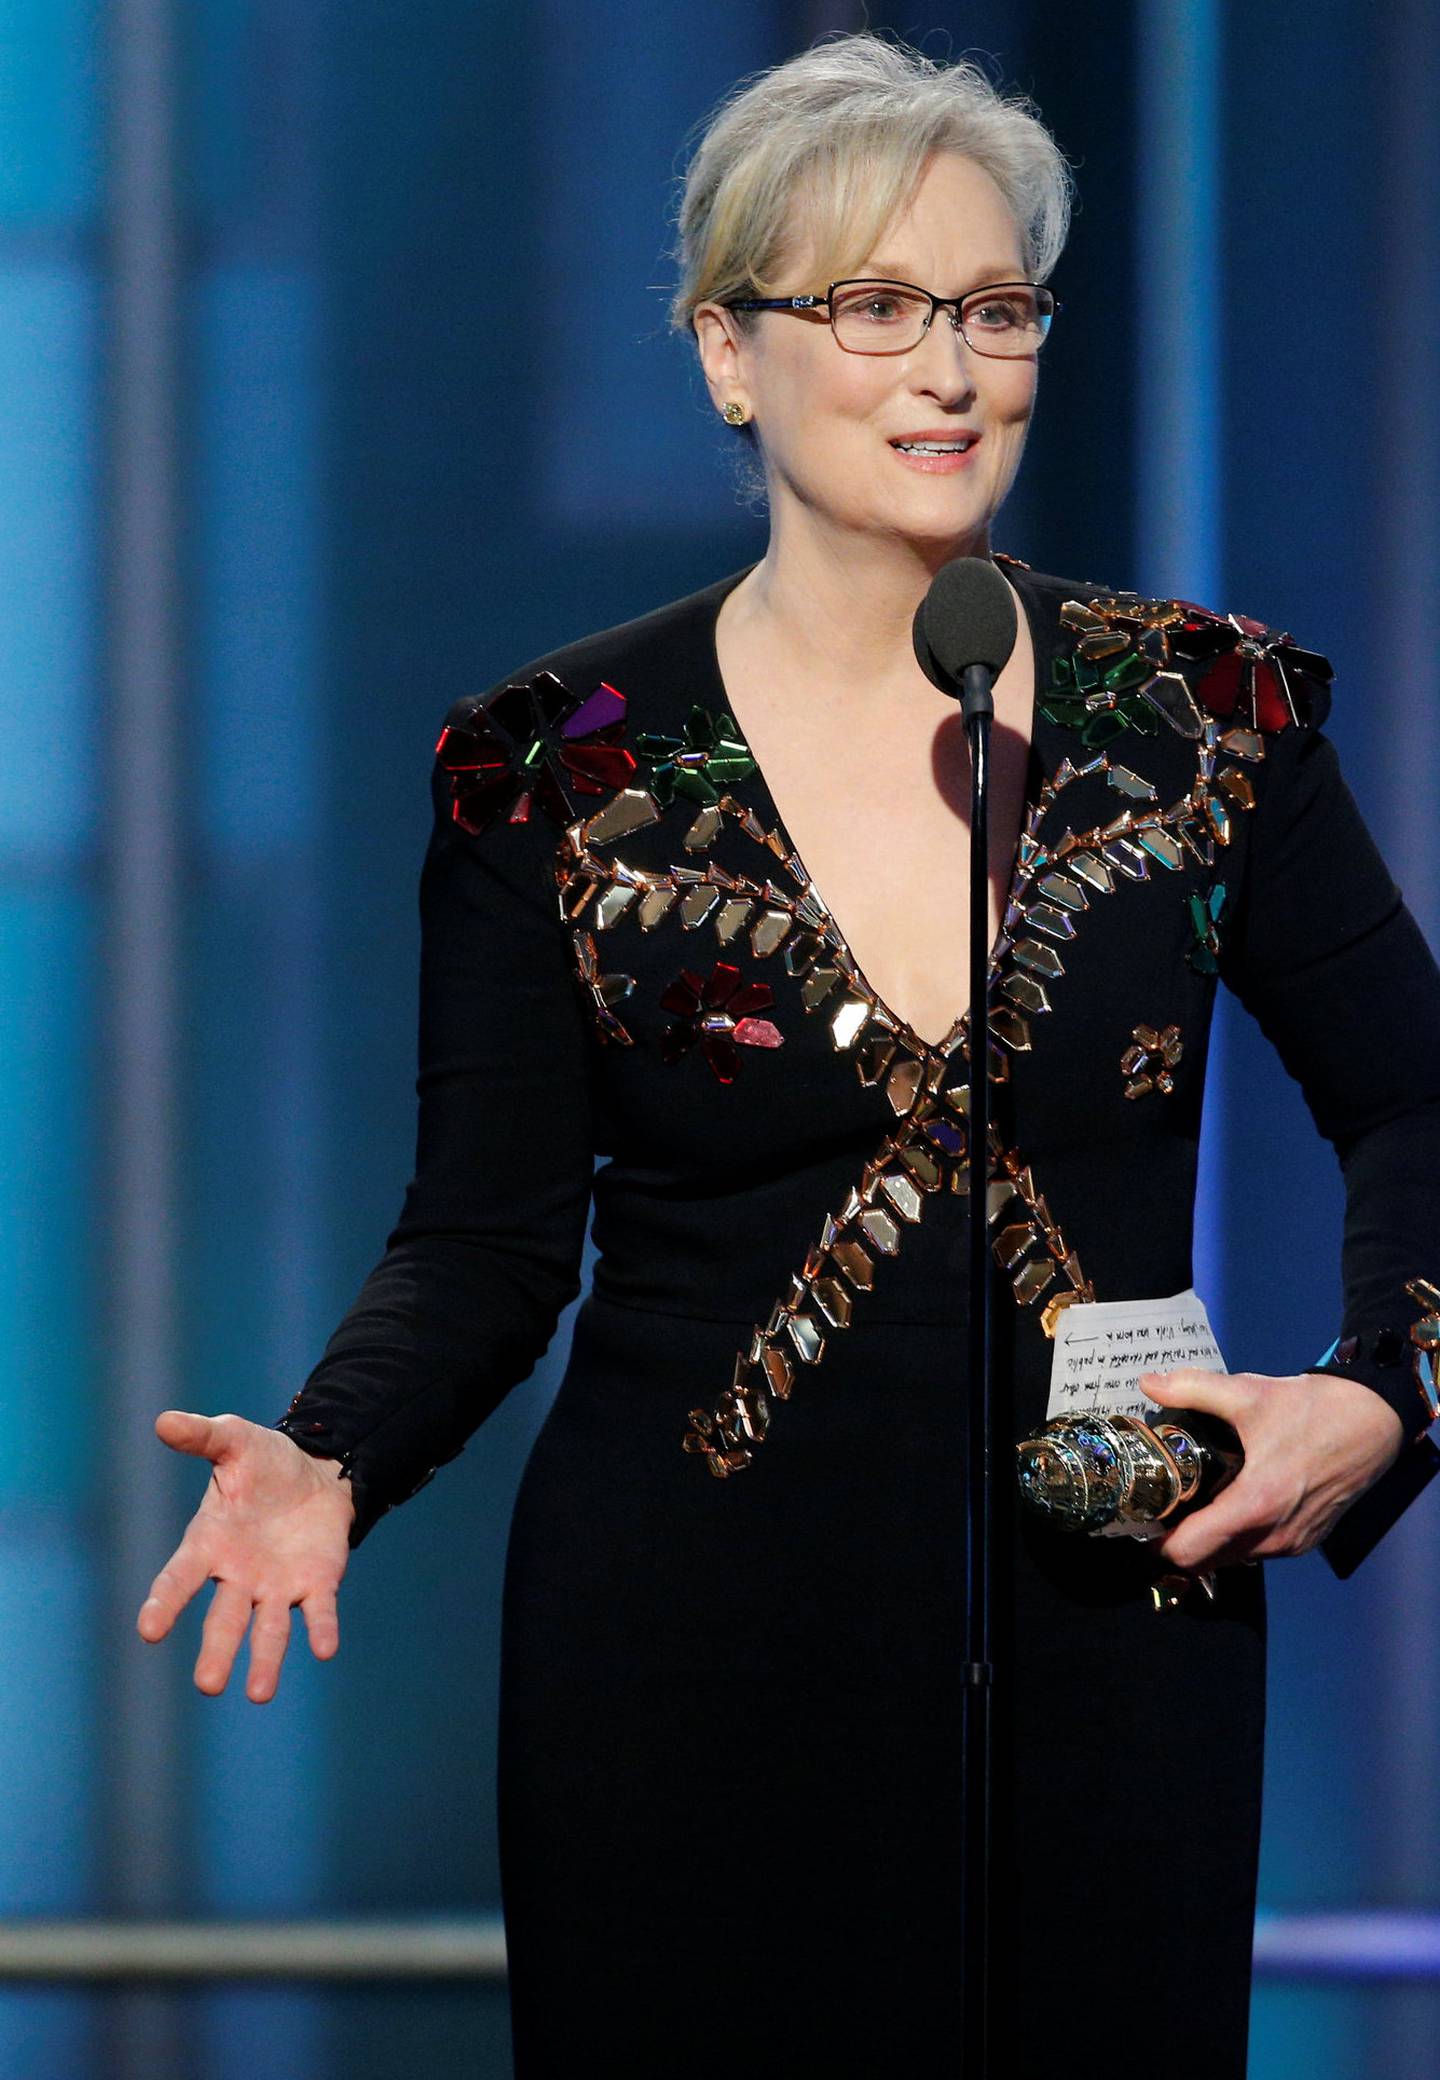 Meryl Streep er både nominert og sikkert også prisutdeler på årets Oscar-show, og vil garantert bruke anledningen slik hun valgte å gjøre det på Golden Globe-utdelingen i januar. FOTO: PAUL DRINKWATER/NTB SCANPIX